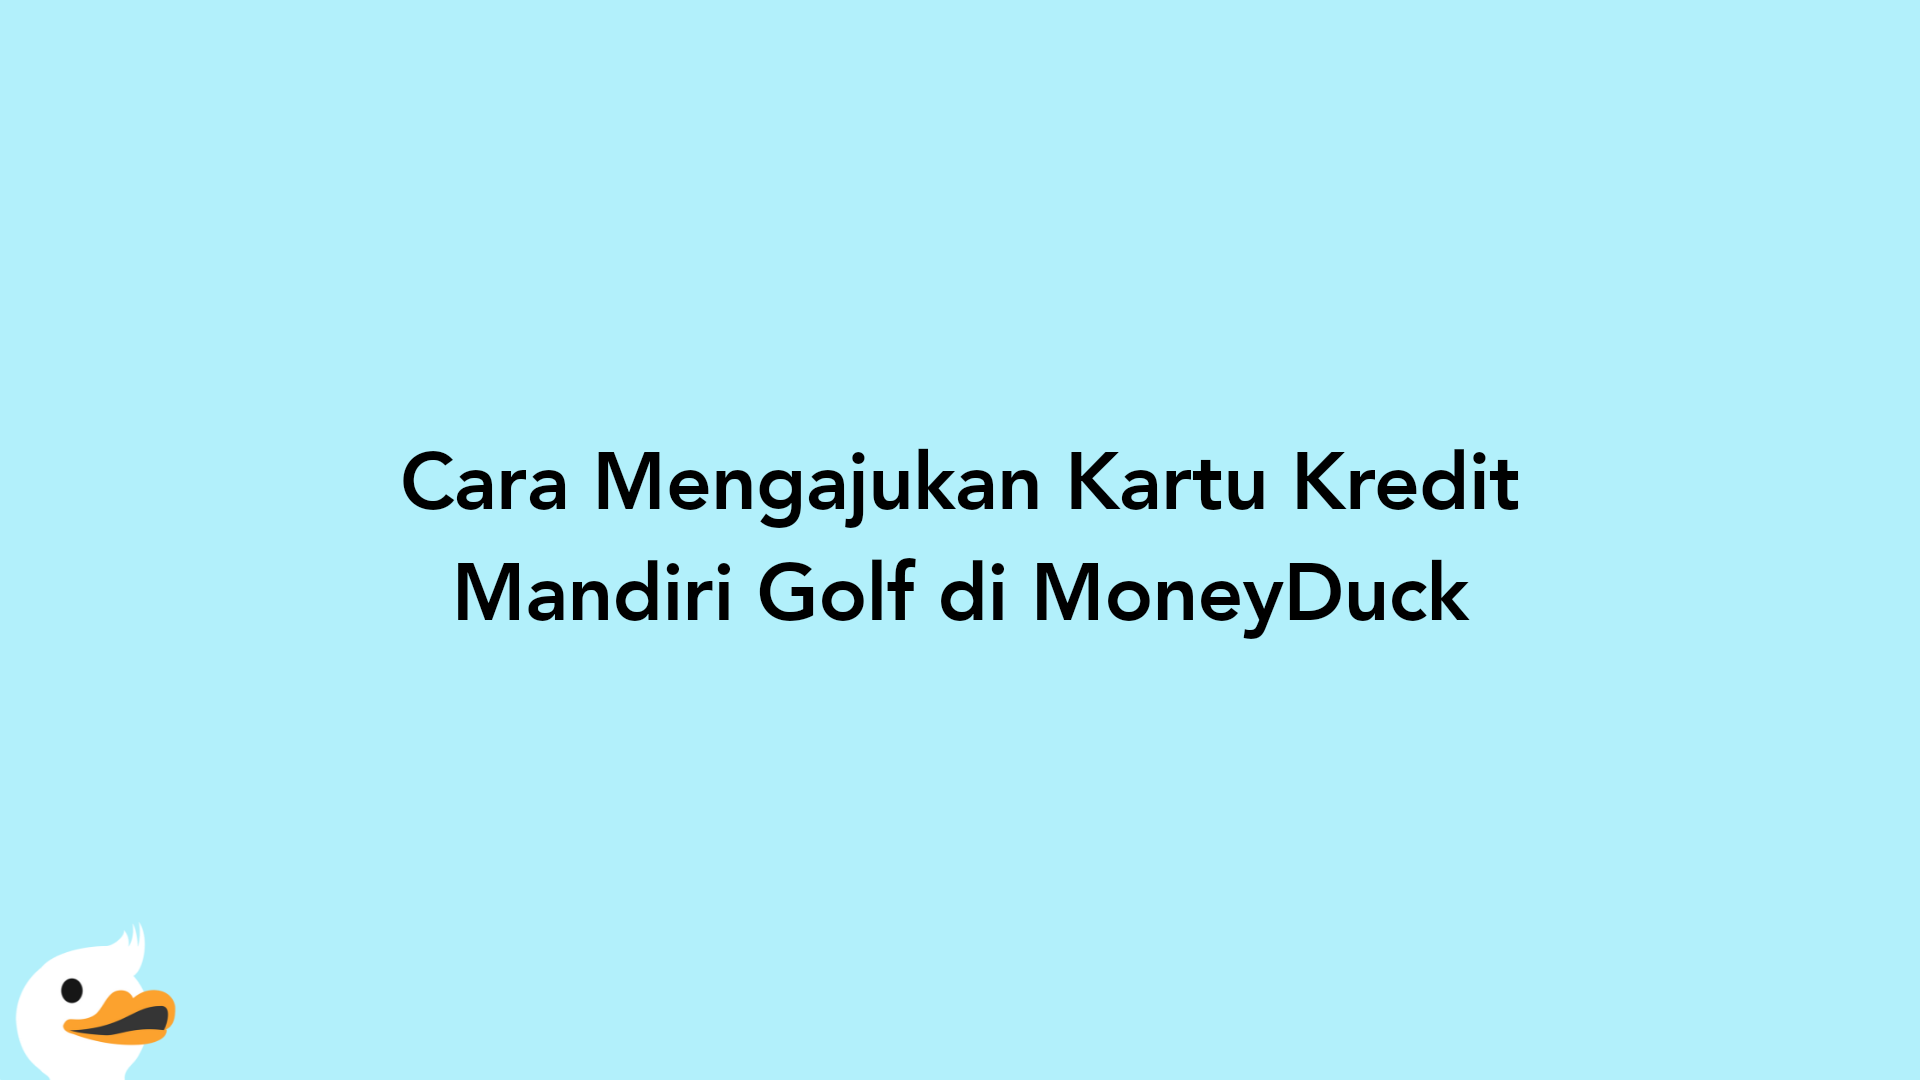 Cara Mengajukan Kartu Kredit Mandiri Golf di MoneyDuck